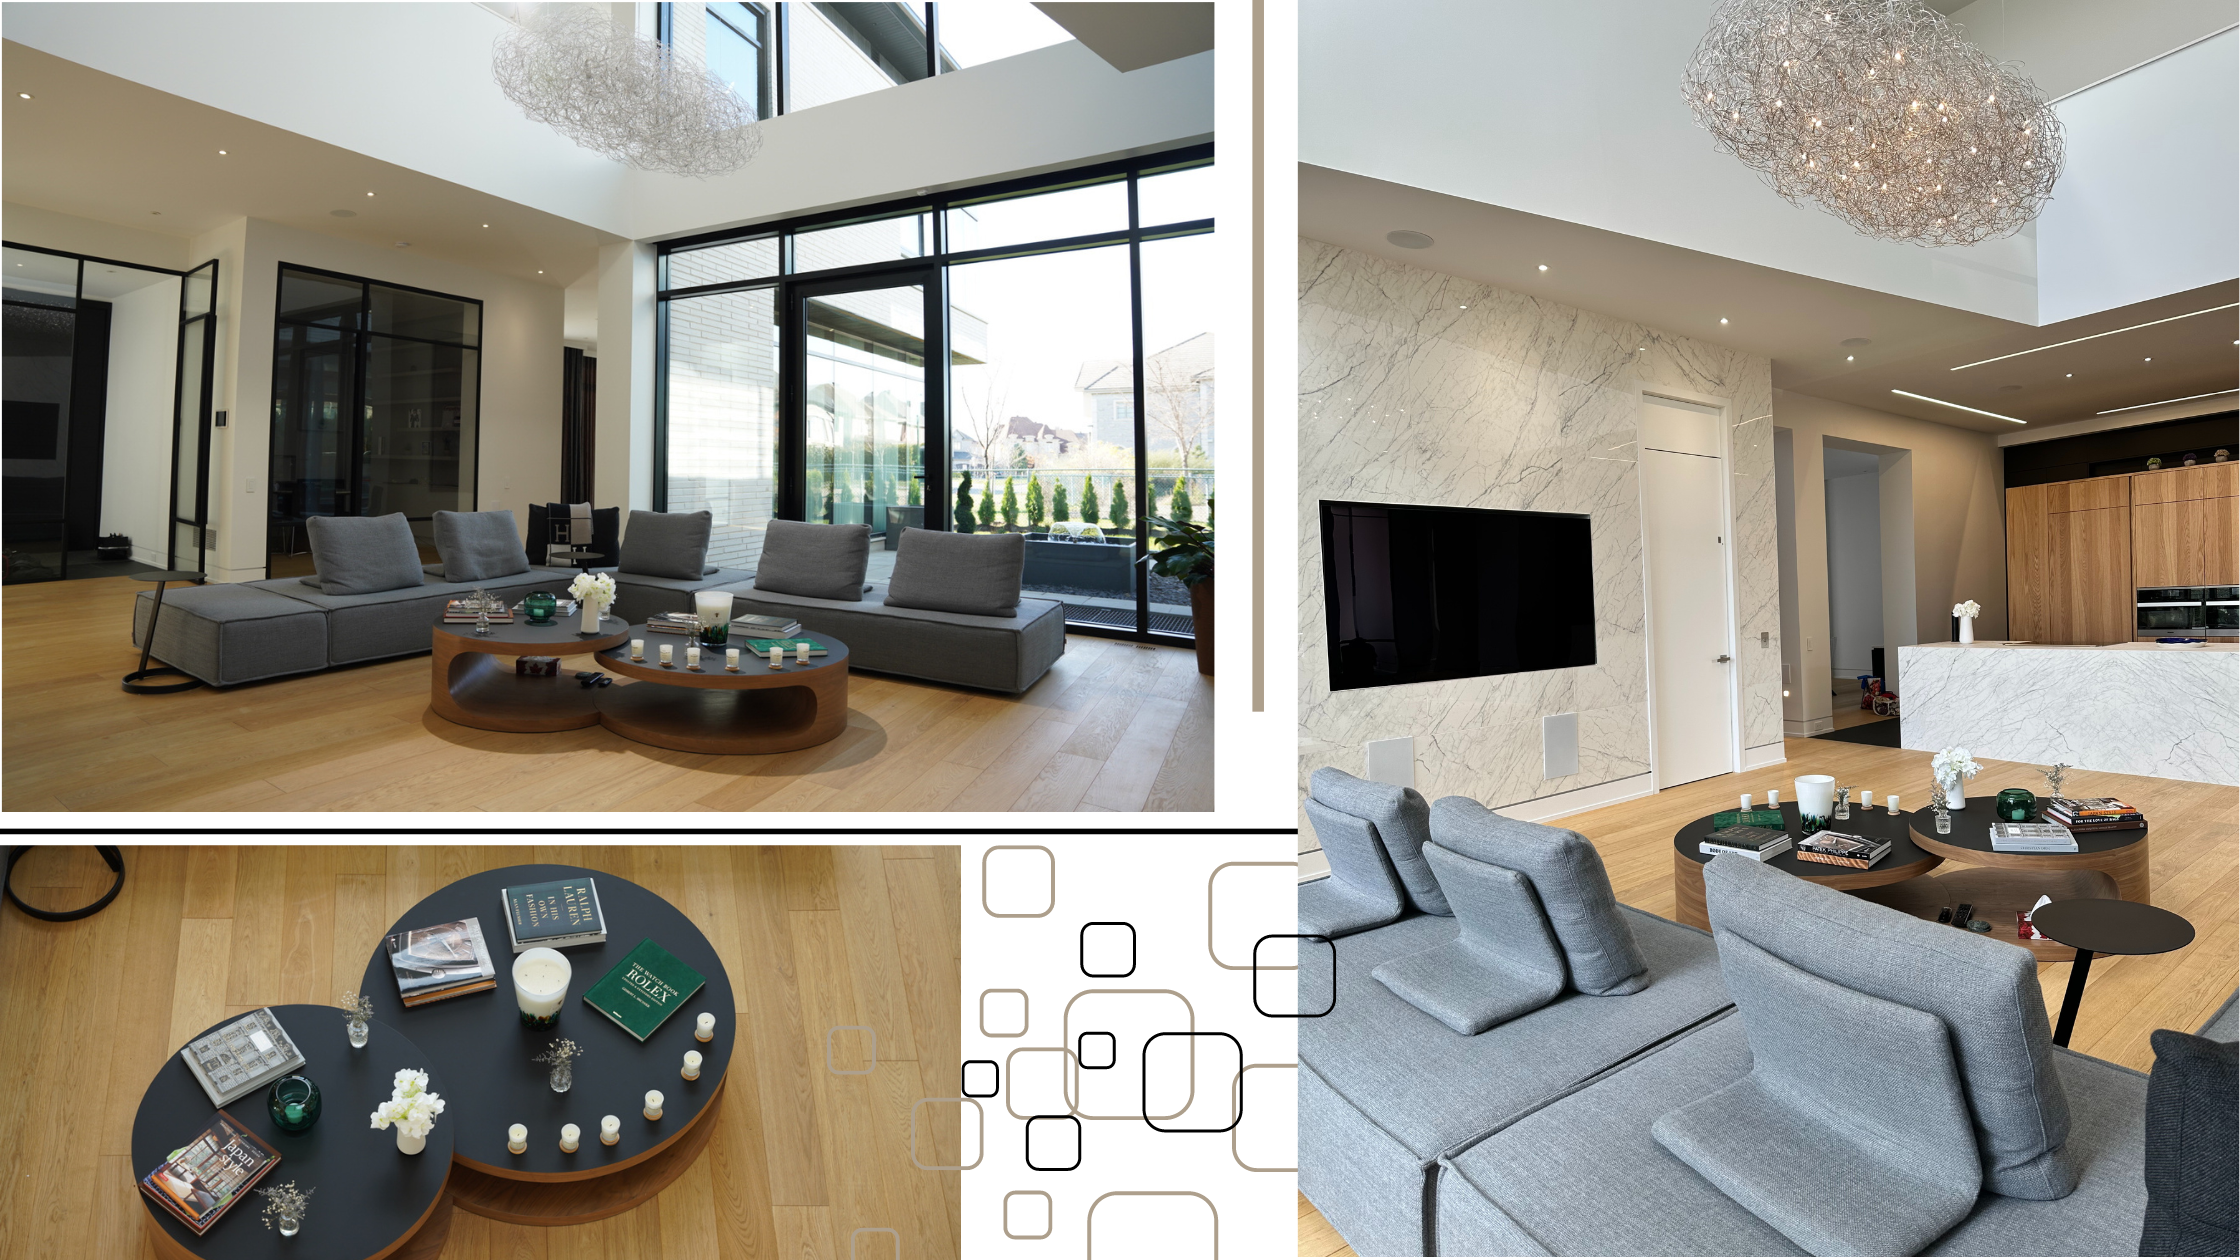 Living room, entrance interior home design ideas and inspiration